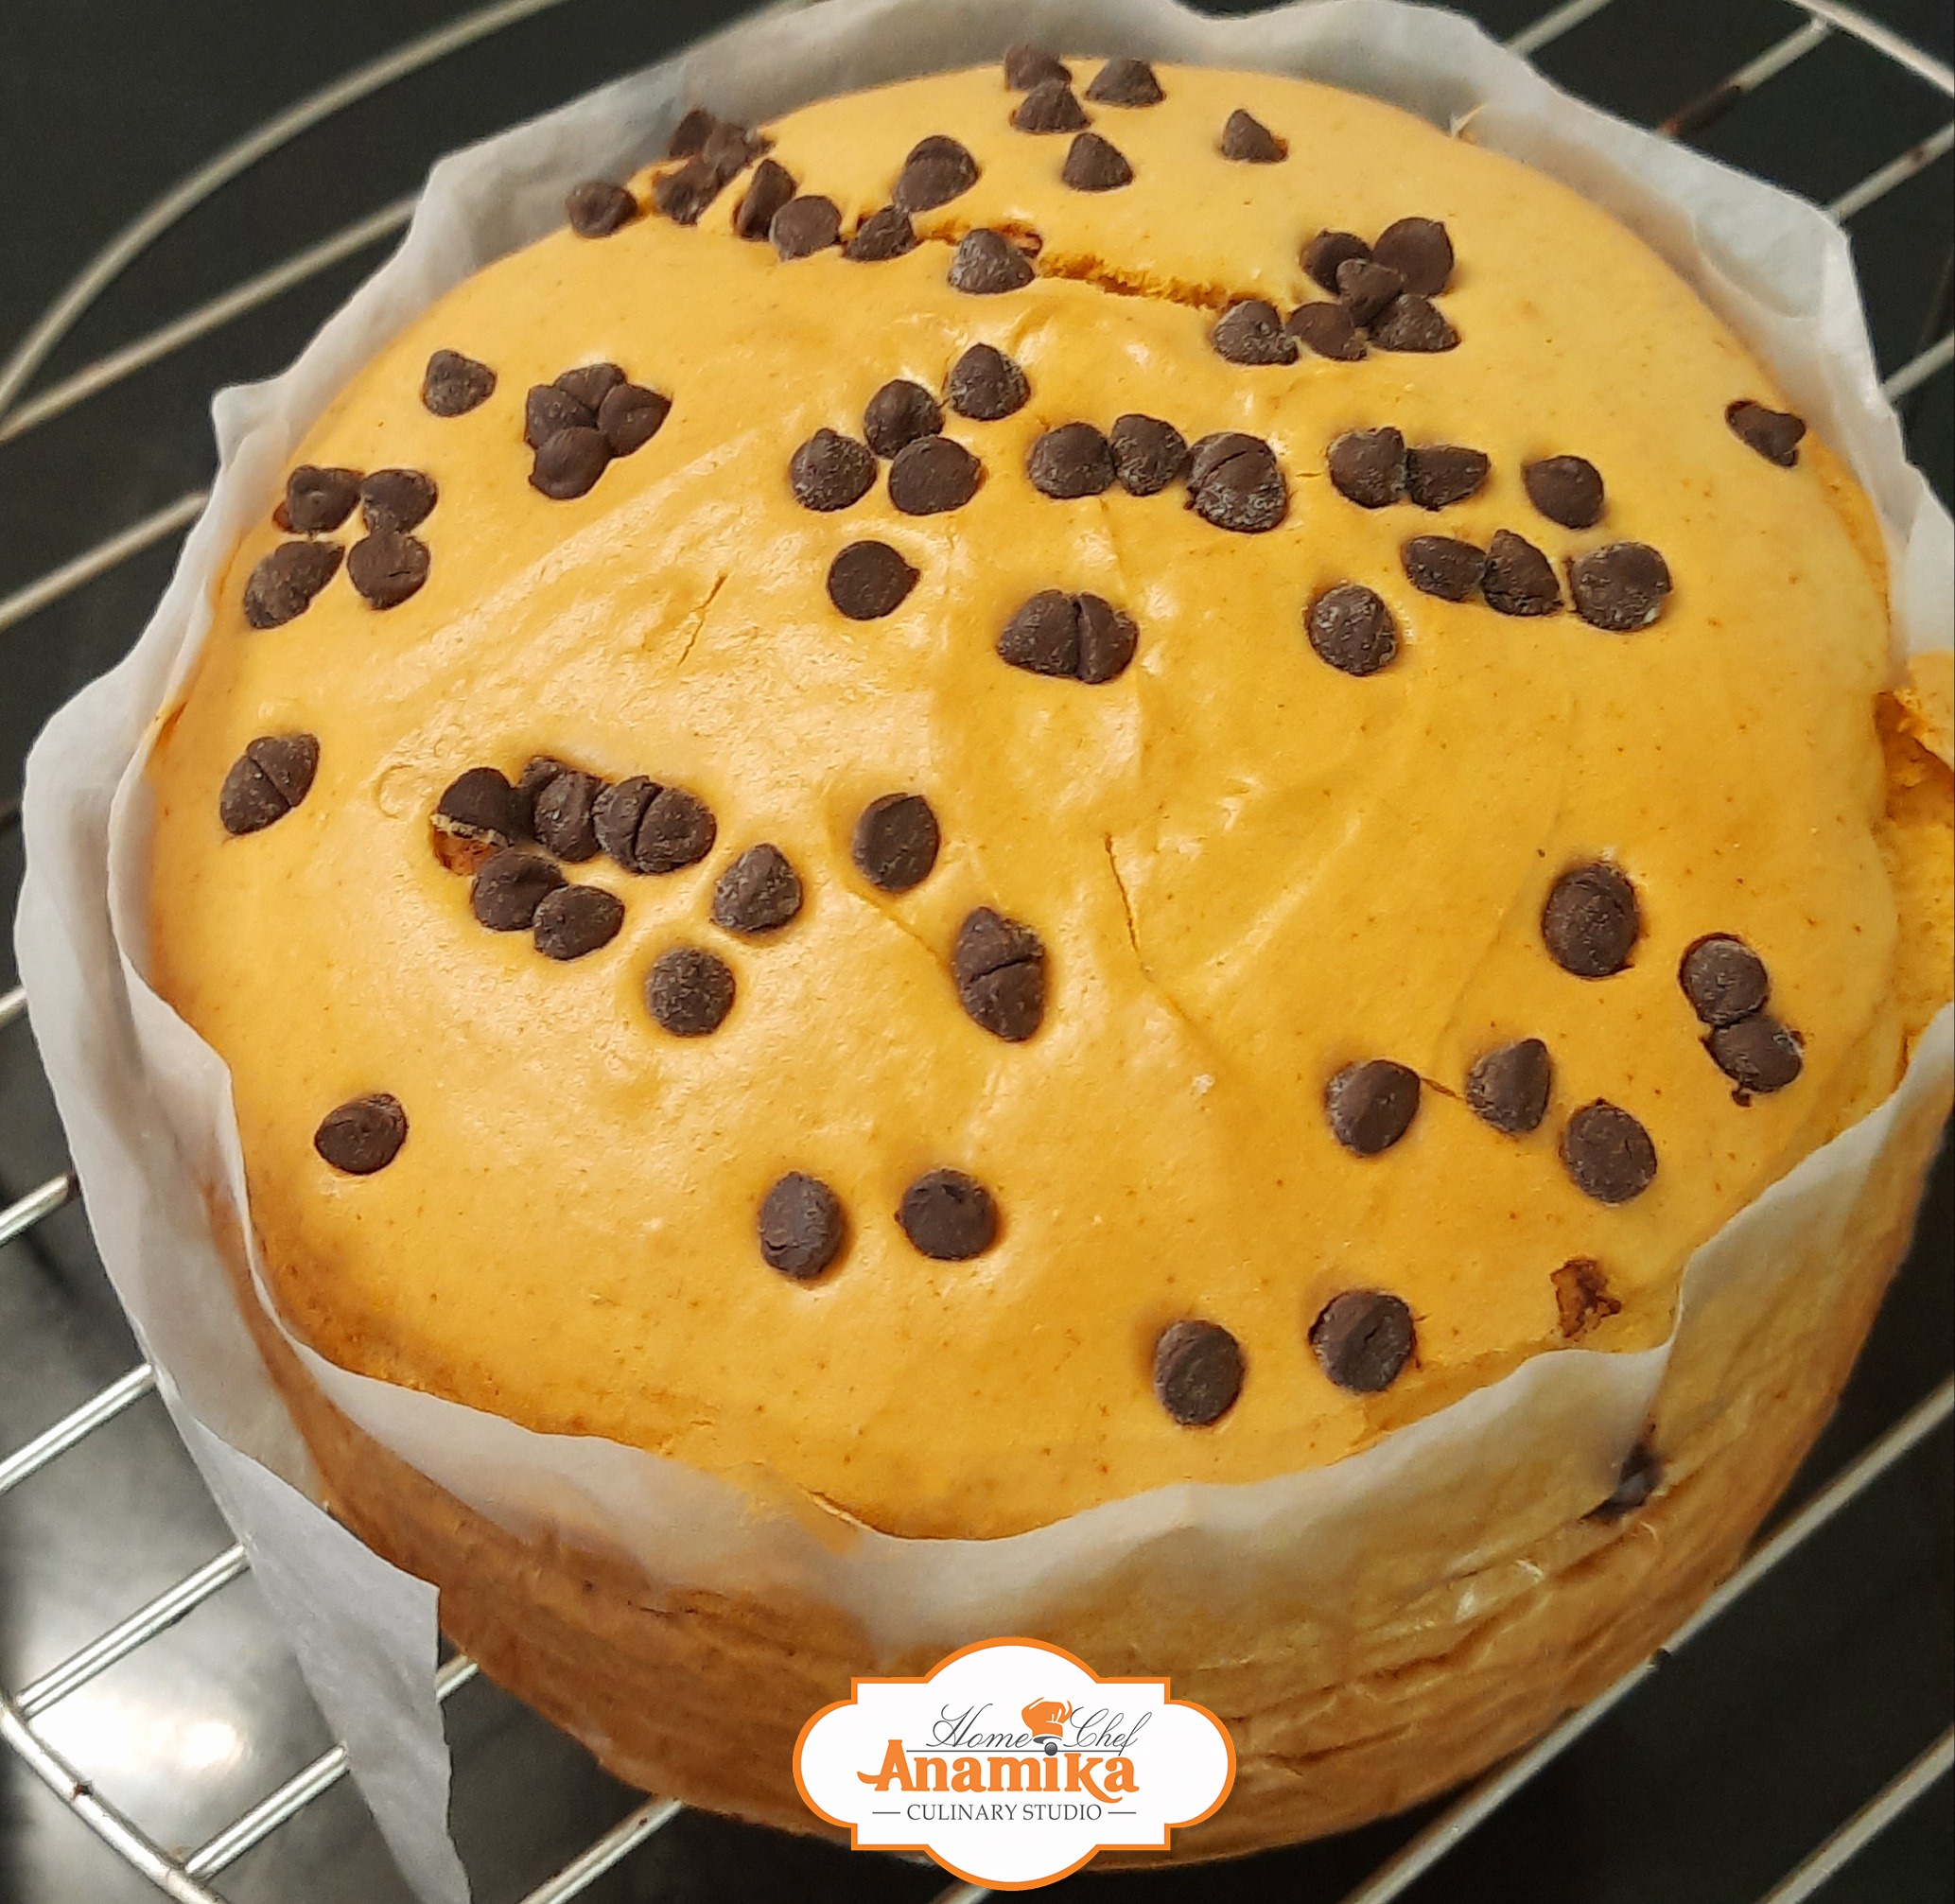 Orange Cake_Home Chef Anamika